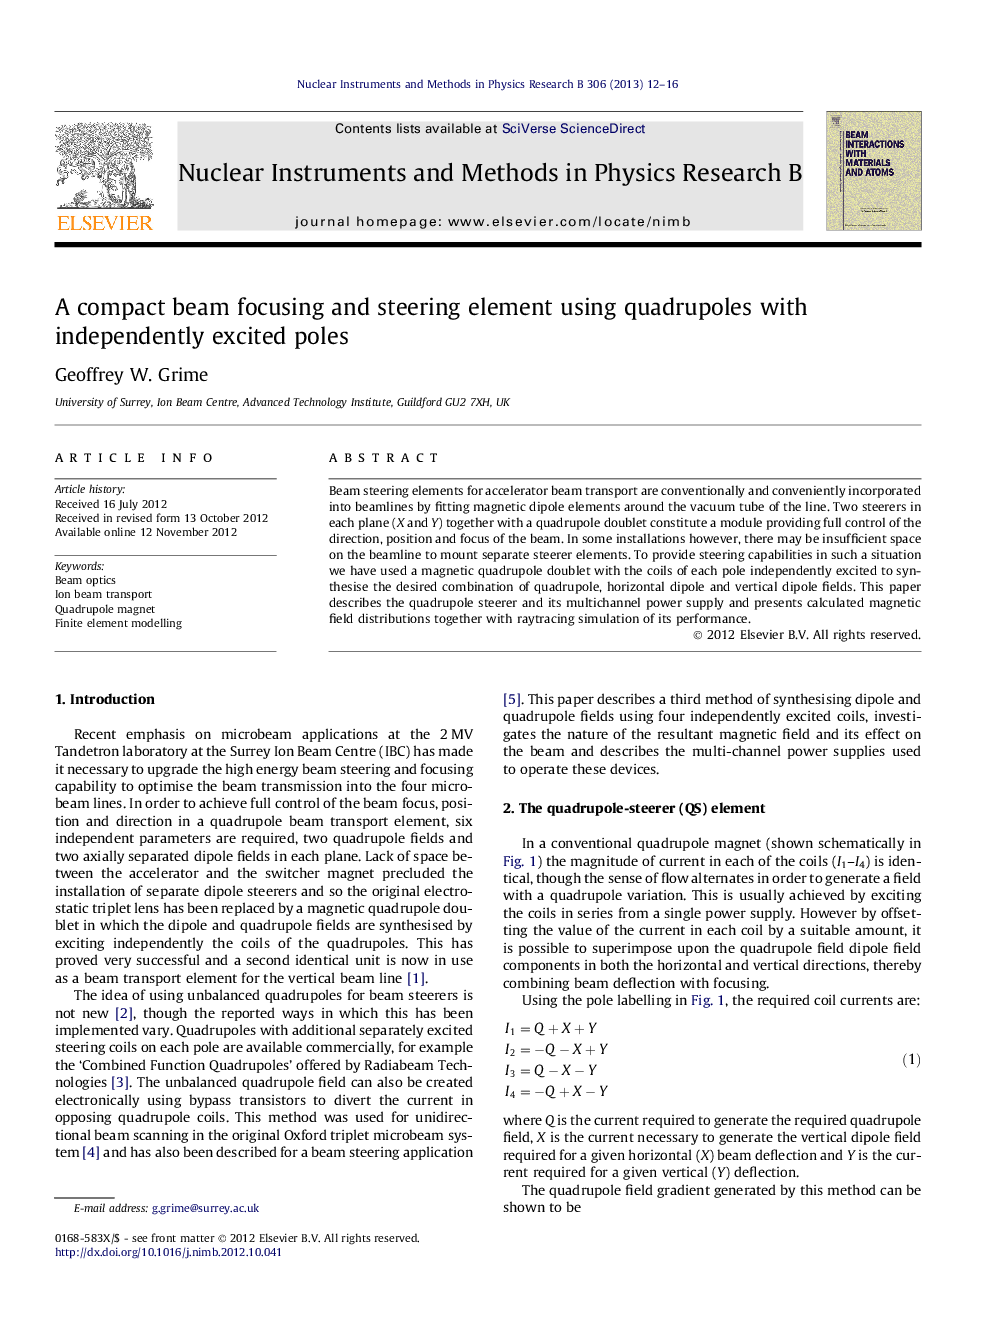 یک فوکوس پرتو فشرده و یک عنصر فرمان با استفاده از چهار قطب با قطبهای مستقل هیجان زده 